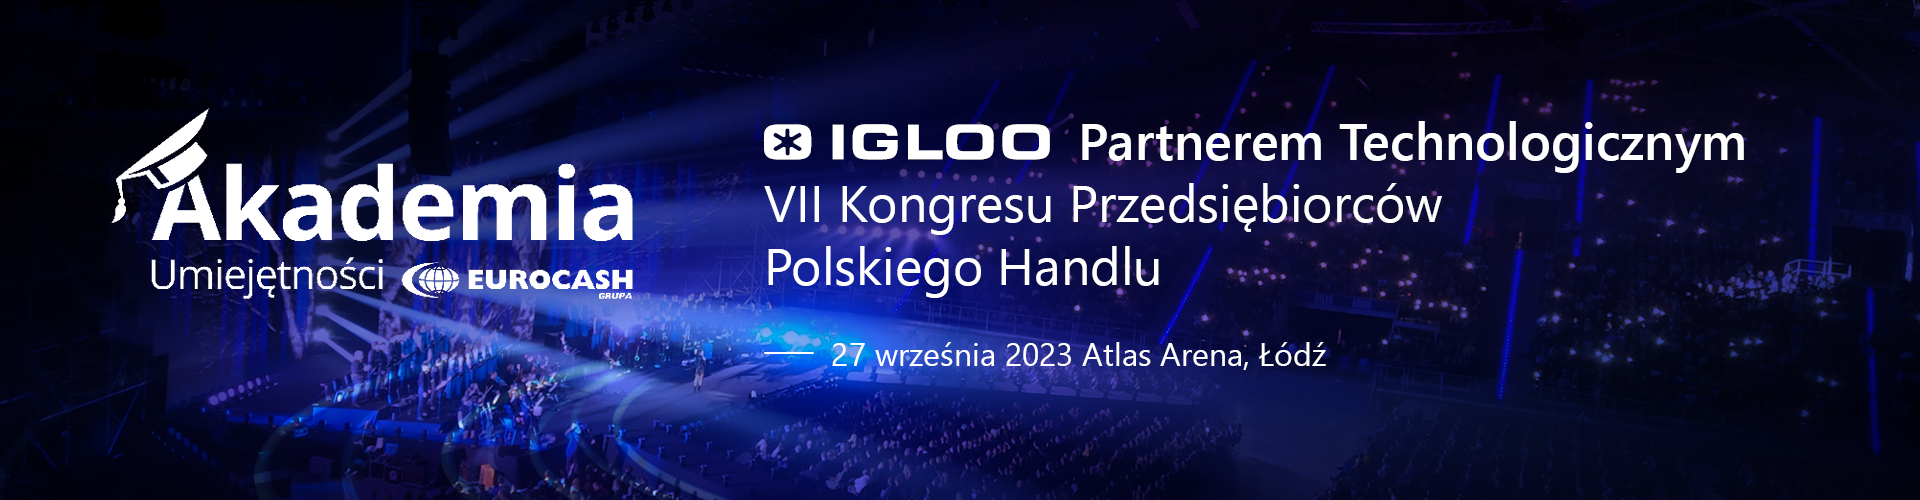 IGLOO Partnerem Technologicznym VII Kongresu Przedsiębiorców Polskiego Handlu